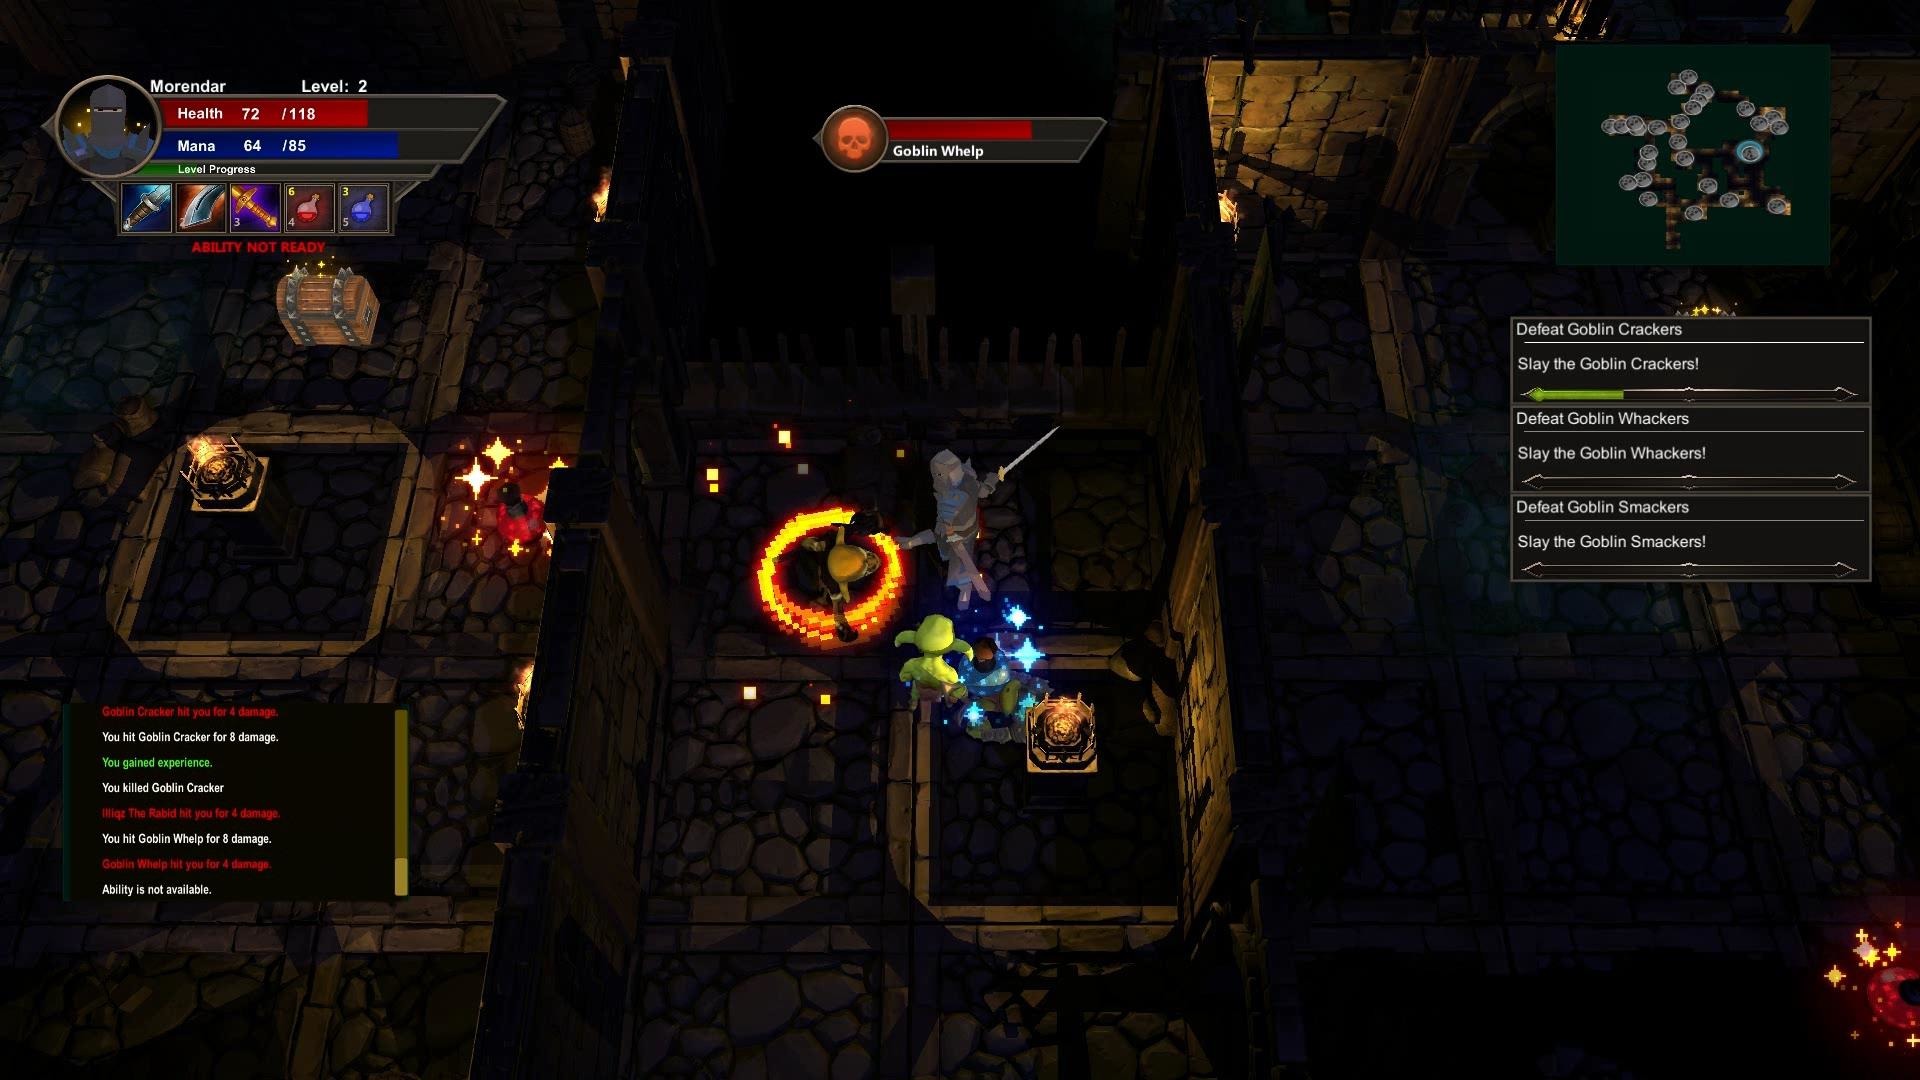 Morendar: Goblin Slayer Steam CD Key